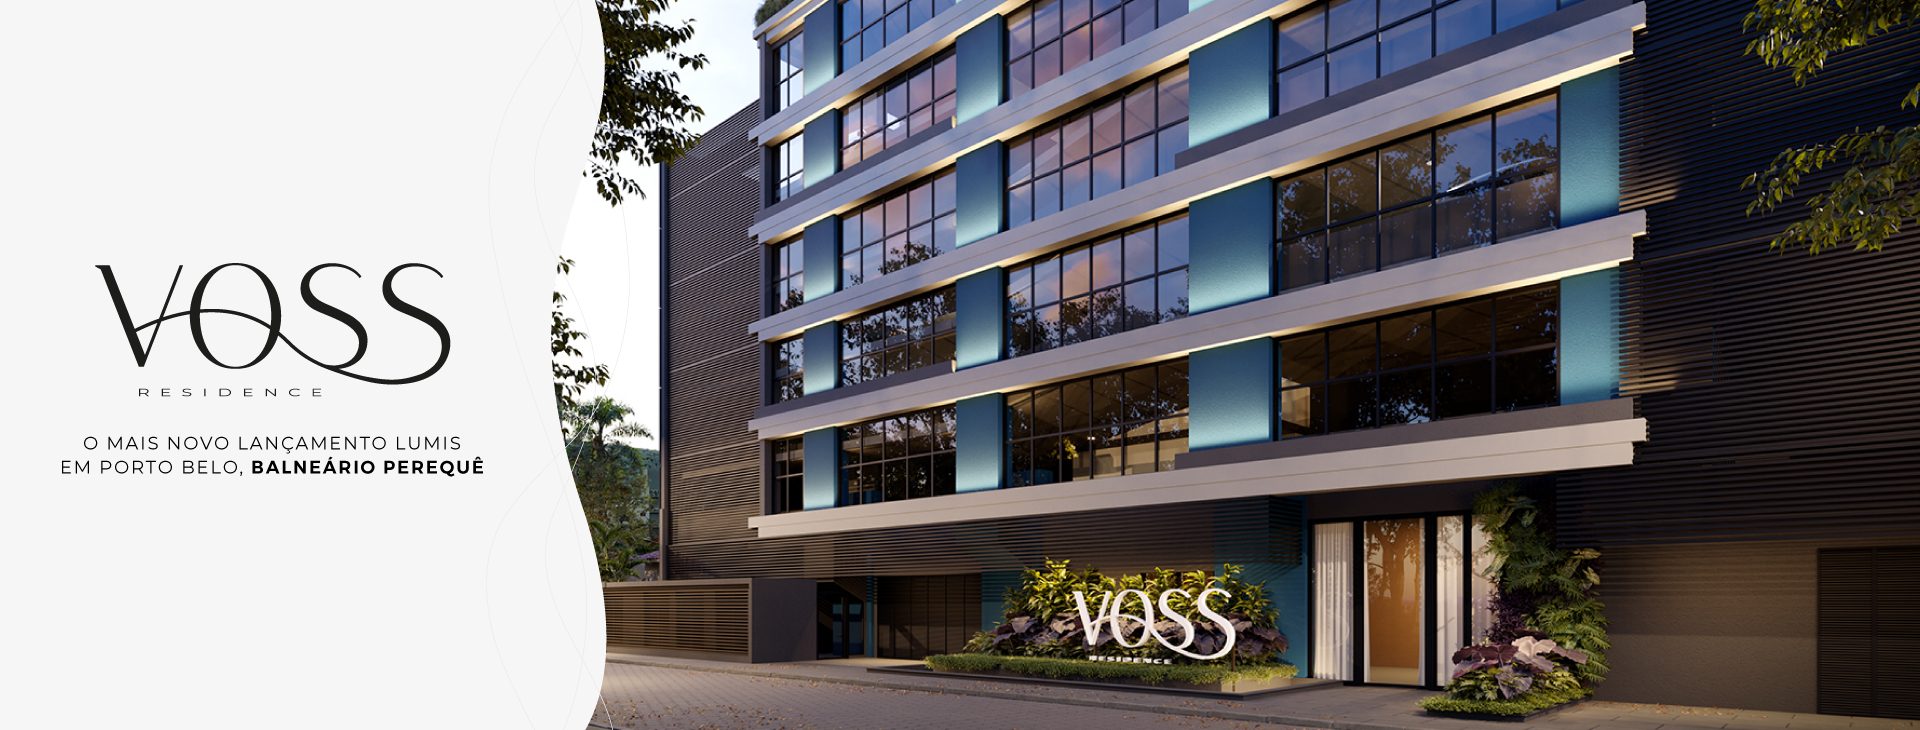 Voss Residence